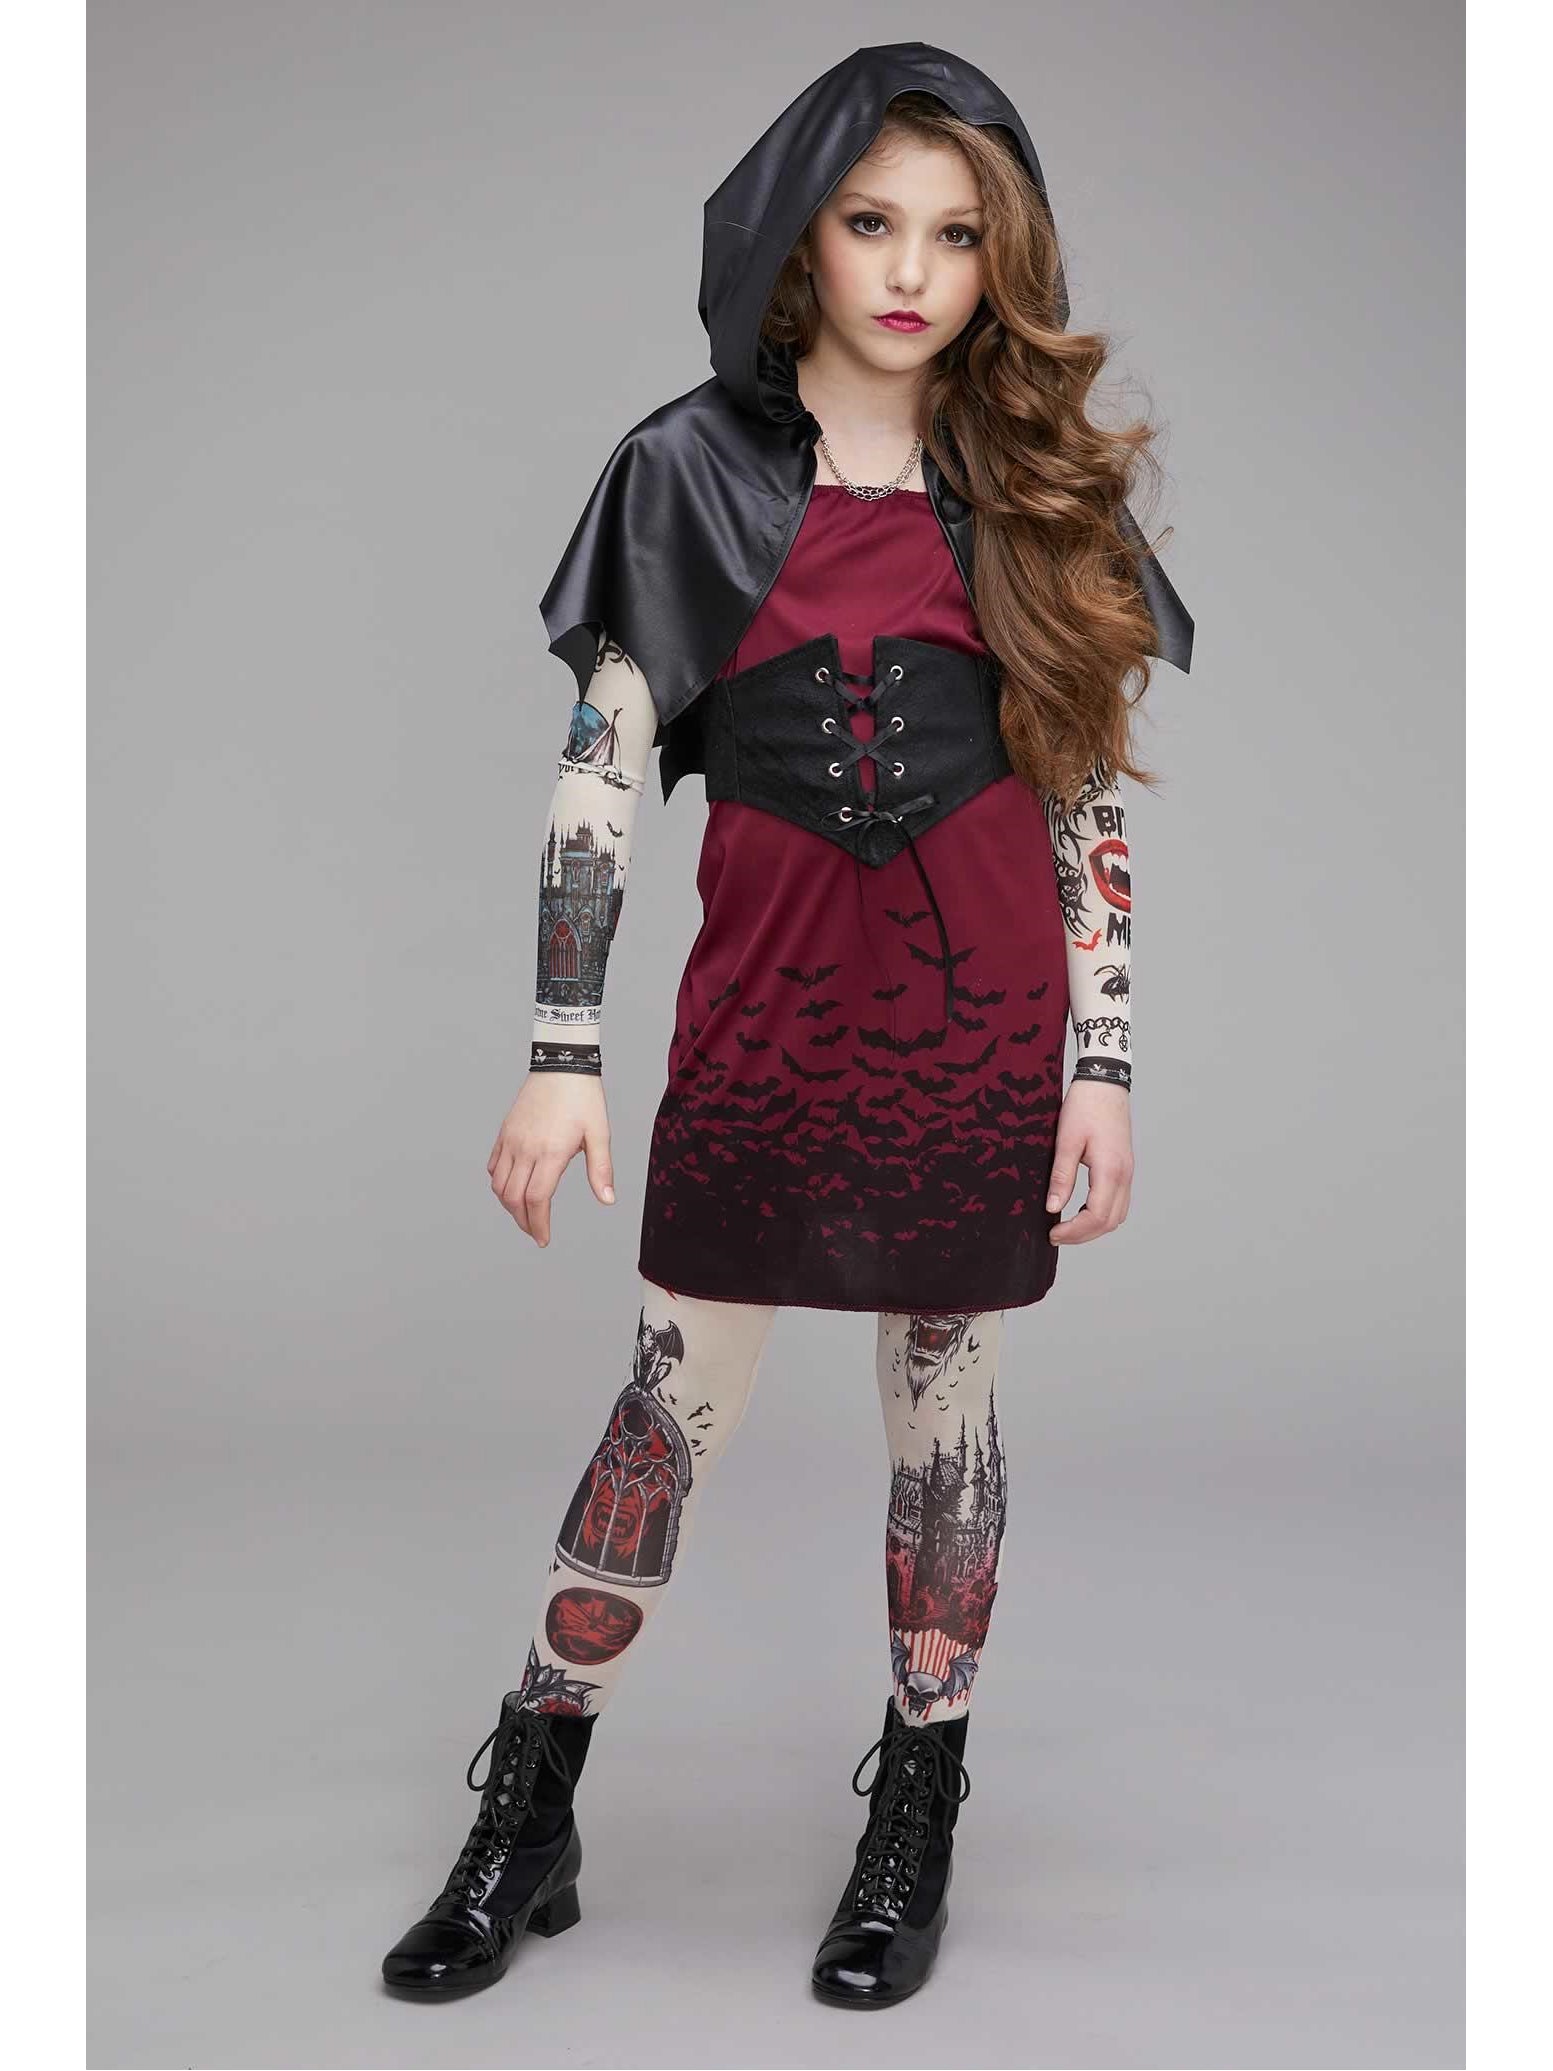 Vampire Costumes For Teenage Girls